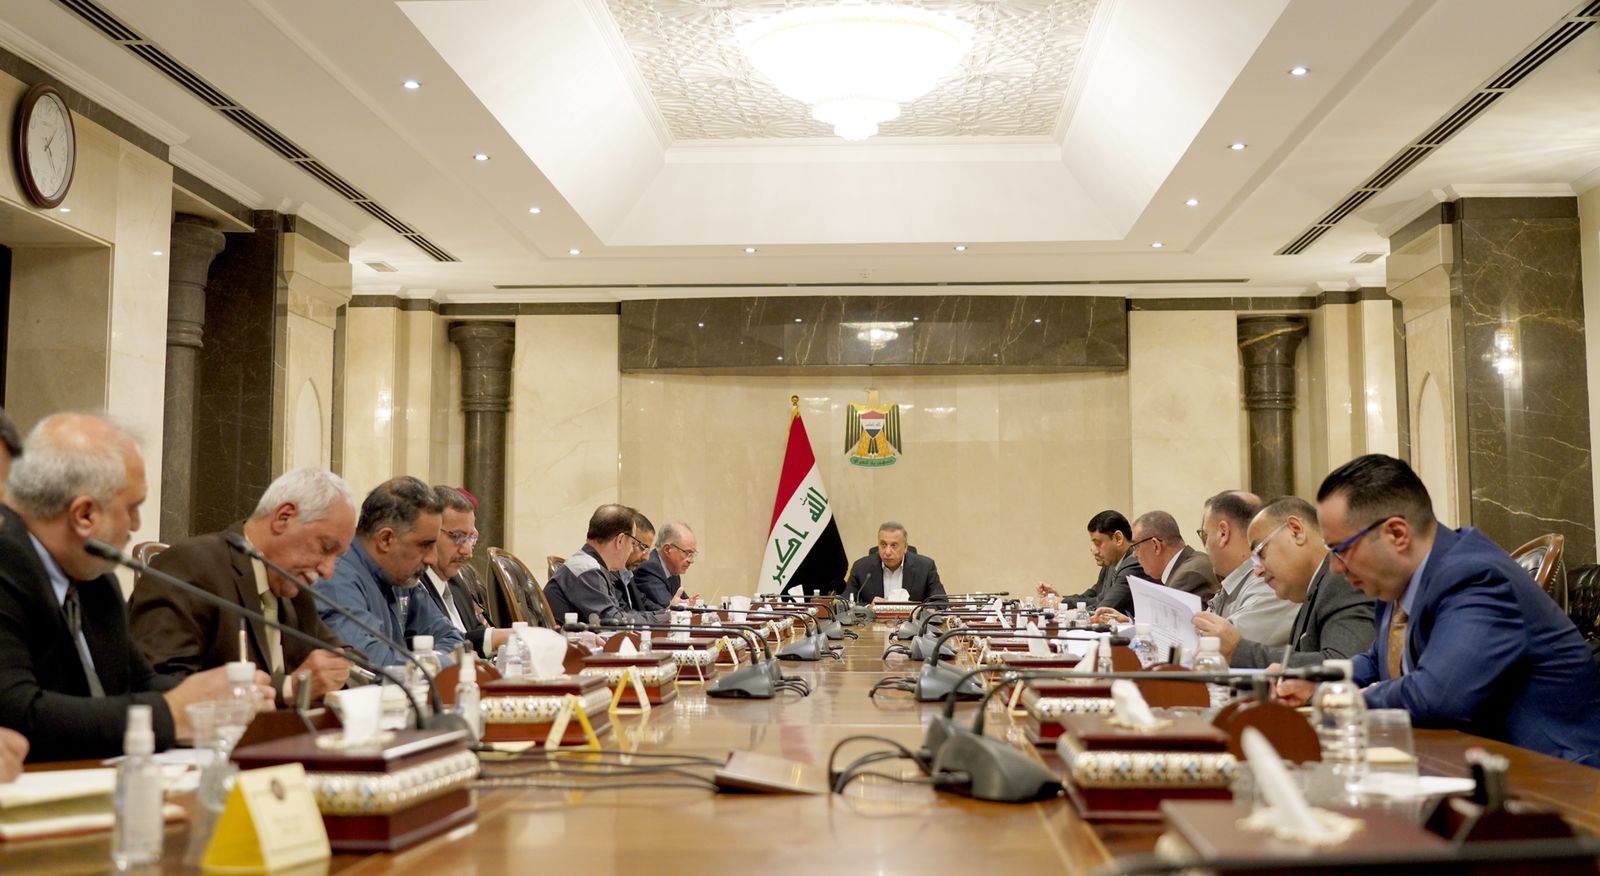 الحكومة العراقية تستبق مفاجآت الصيف بتوجيهات تضمن استقرار الطاقة الكهربائية